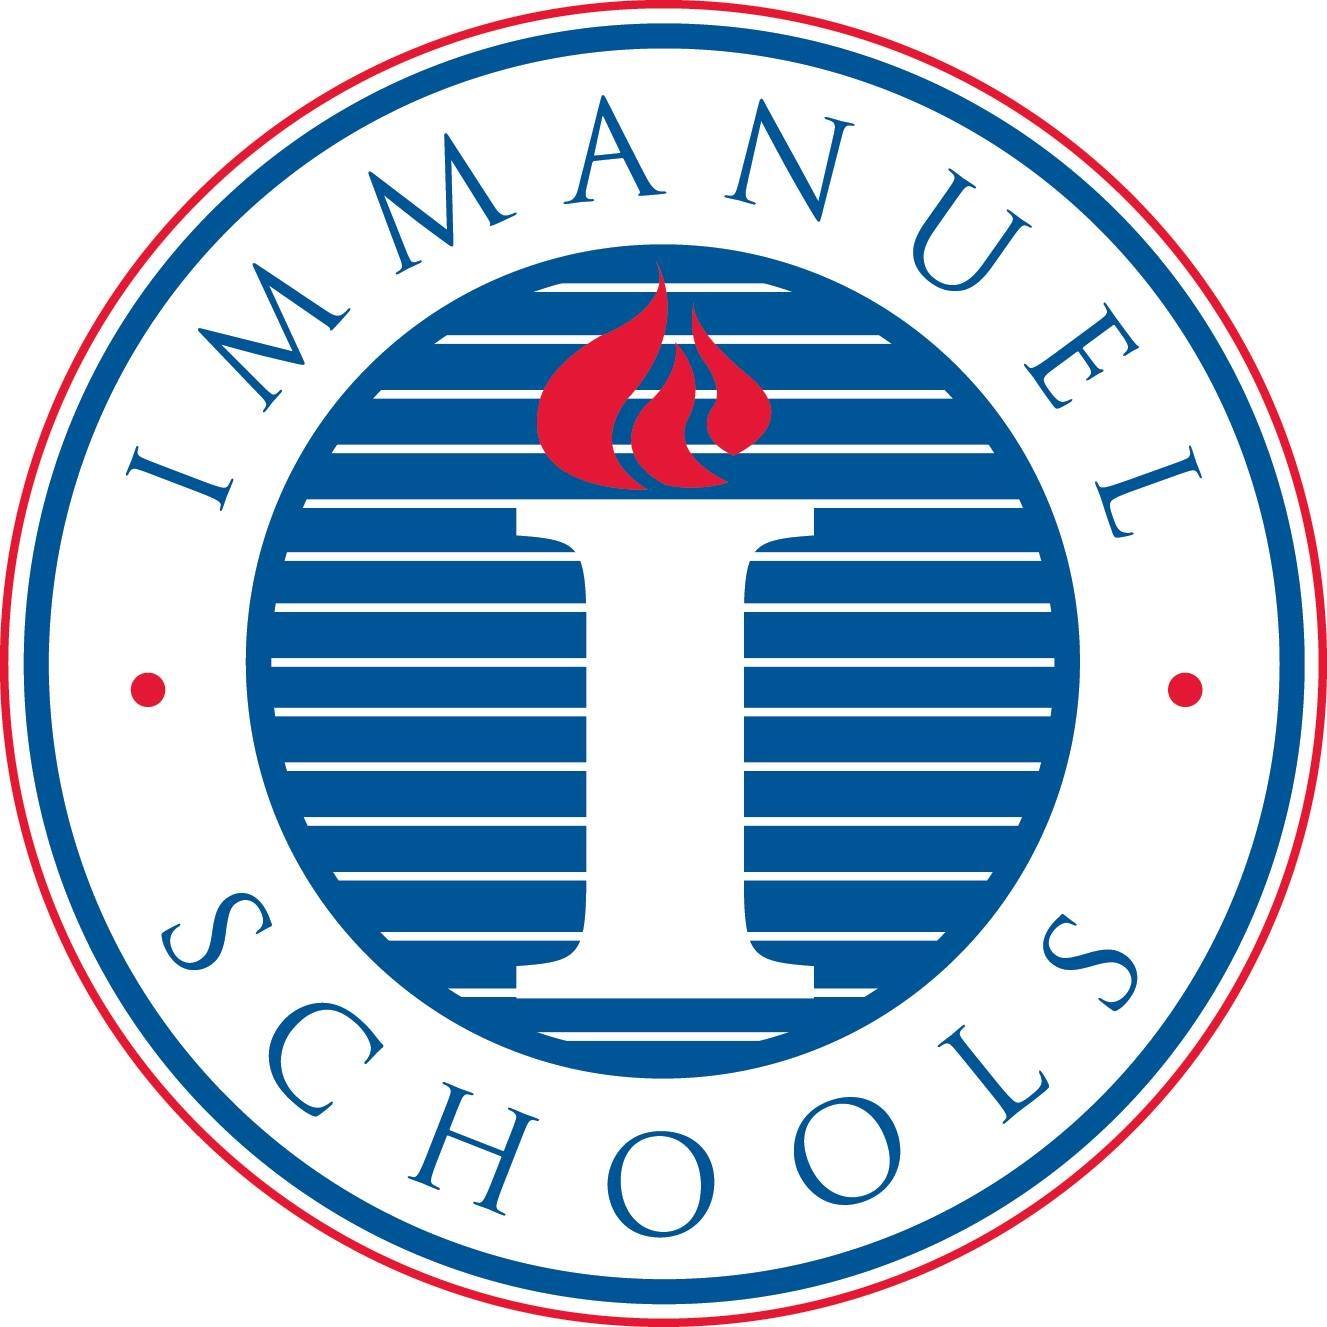 Immanuel Schools